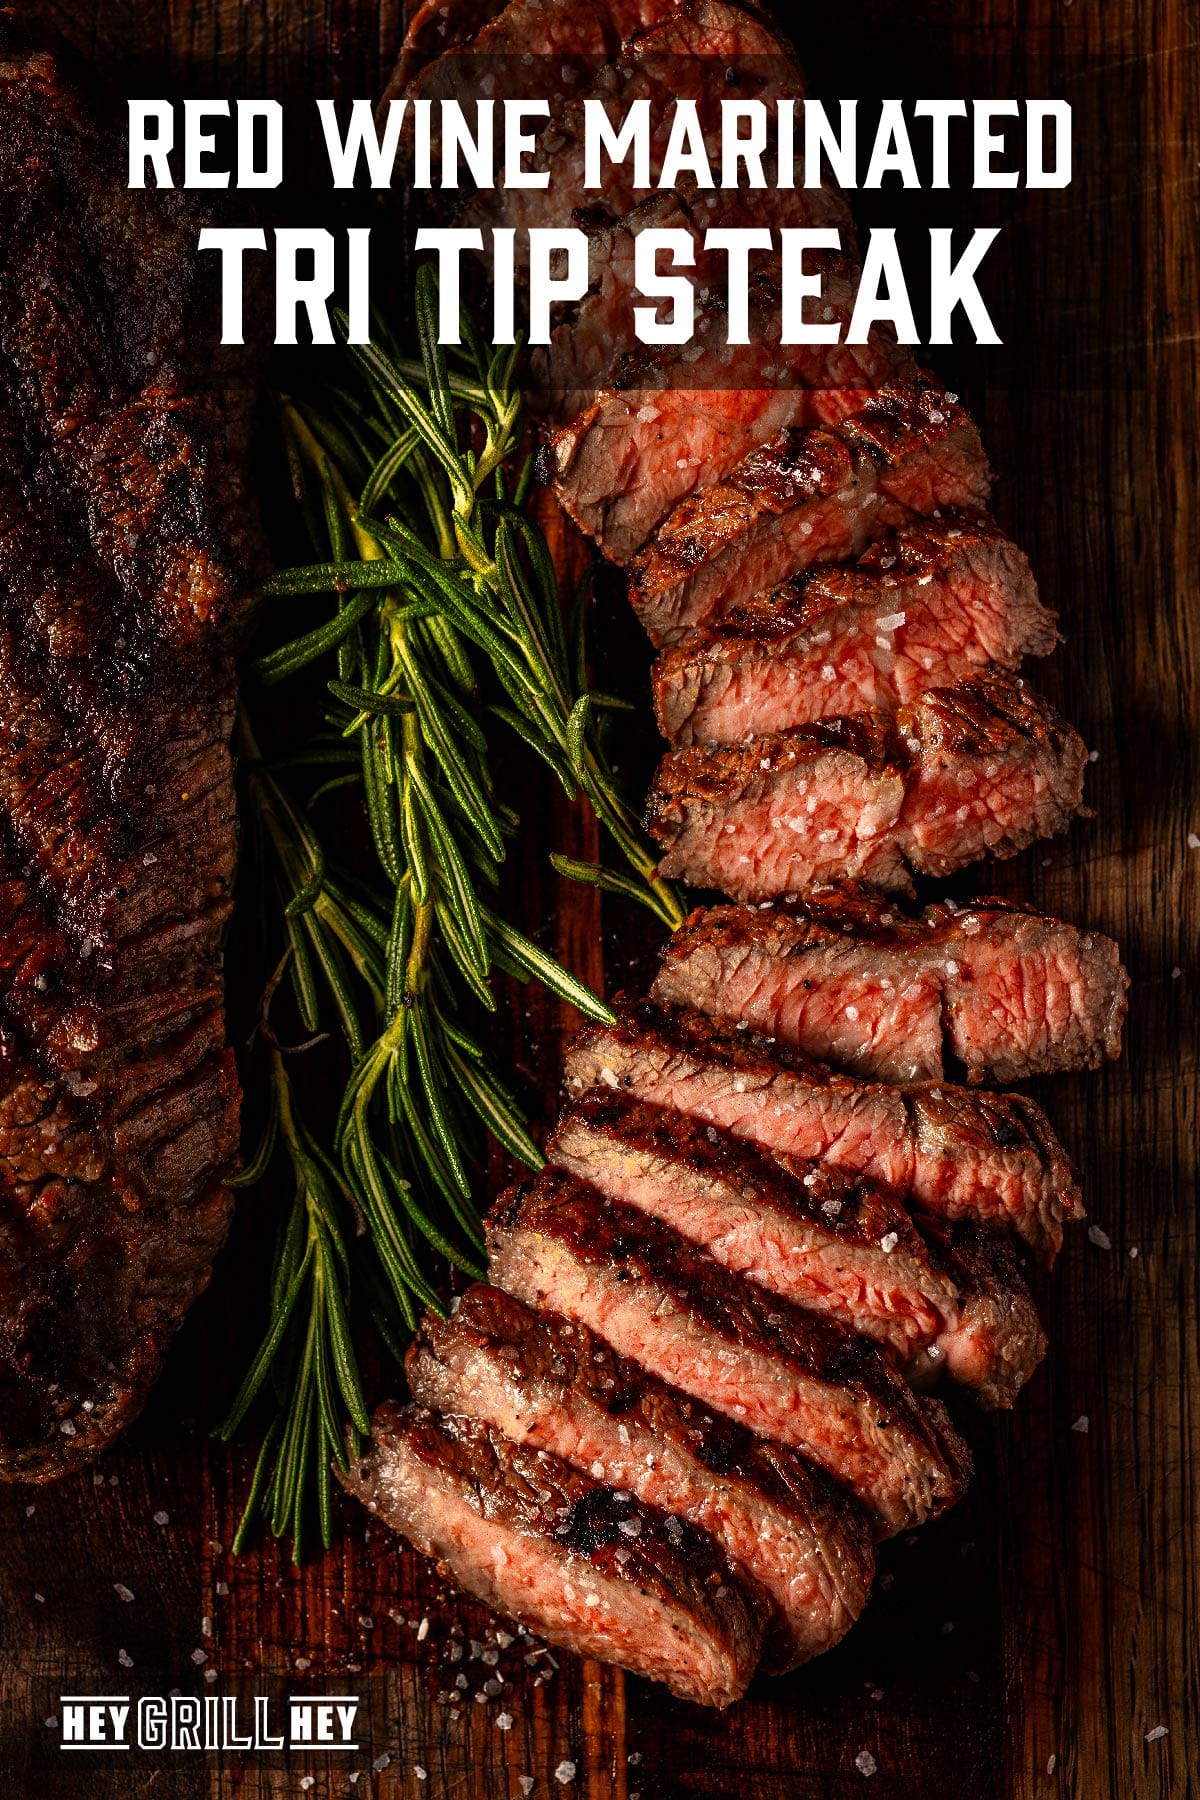 Sliced steak on serving platter with garnish. Text reads "Red Wine Marinated Tri Tip Steak".